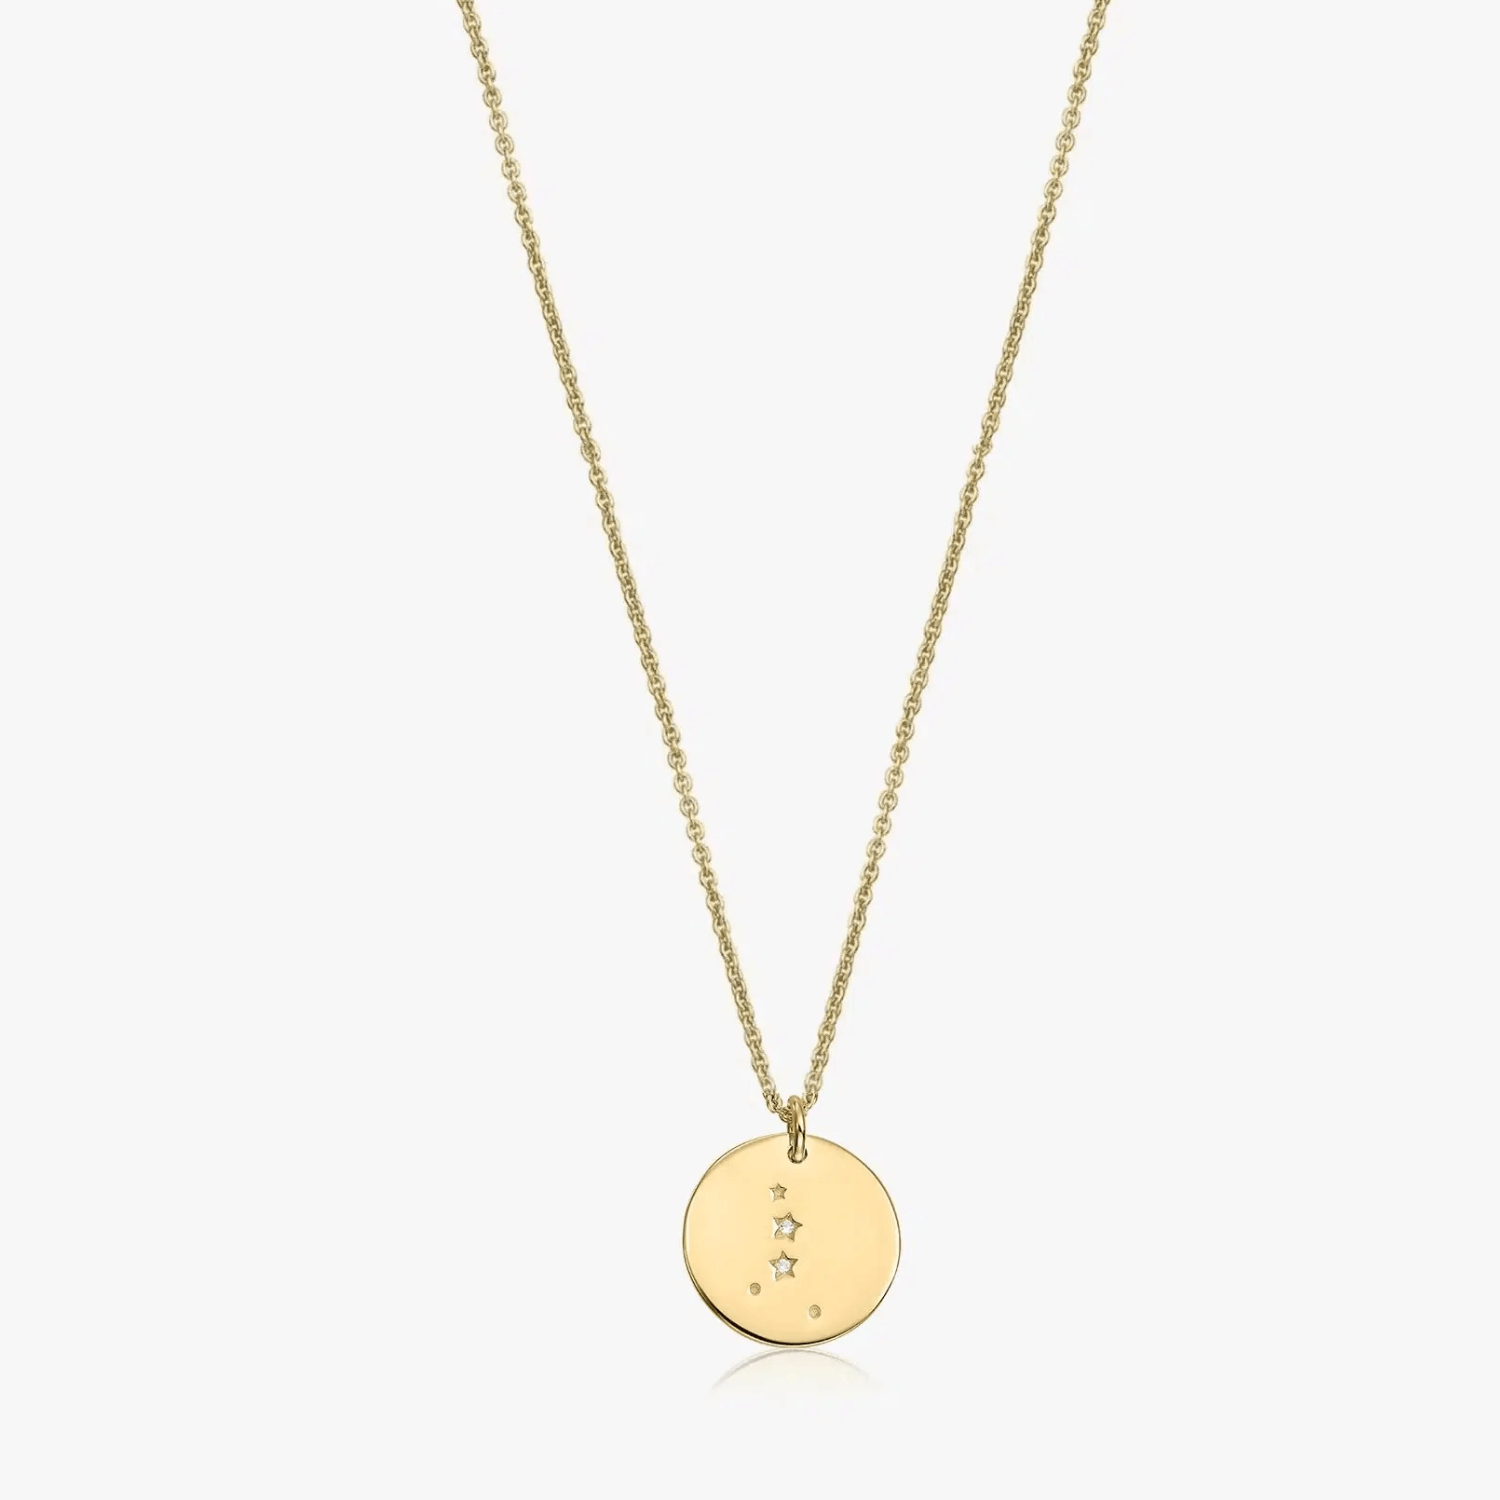 Golden Zodiac silver necklace - Cancer